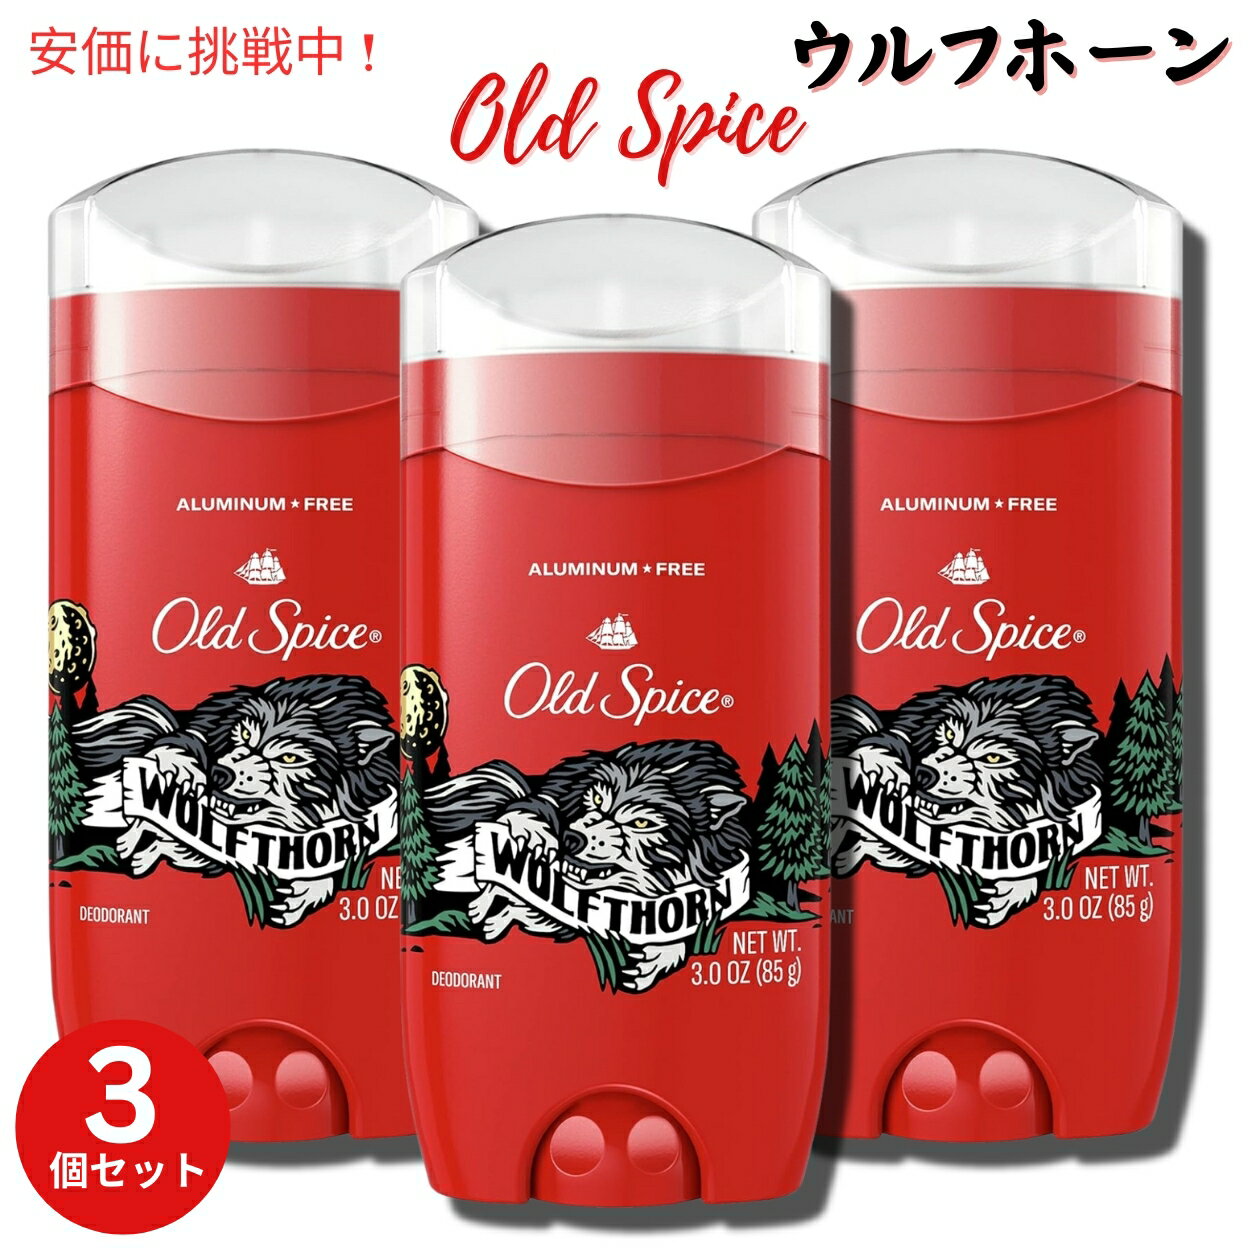 【3個セット】オールドスパイス デオドラント Wolfthorn ウルフホーン 85g Old Spice Wild Collection Deodorant 3oz